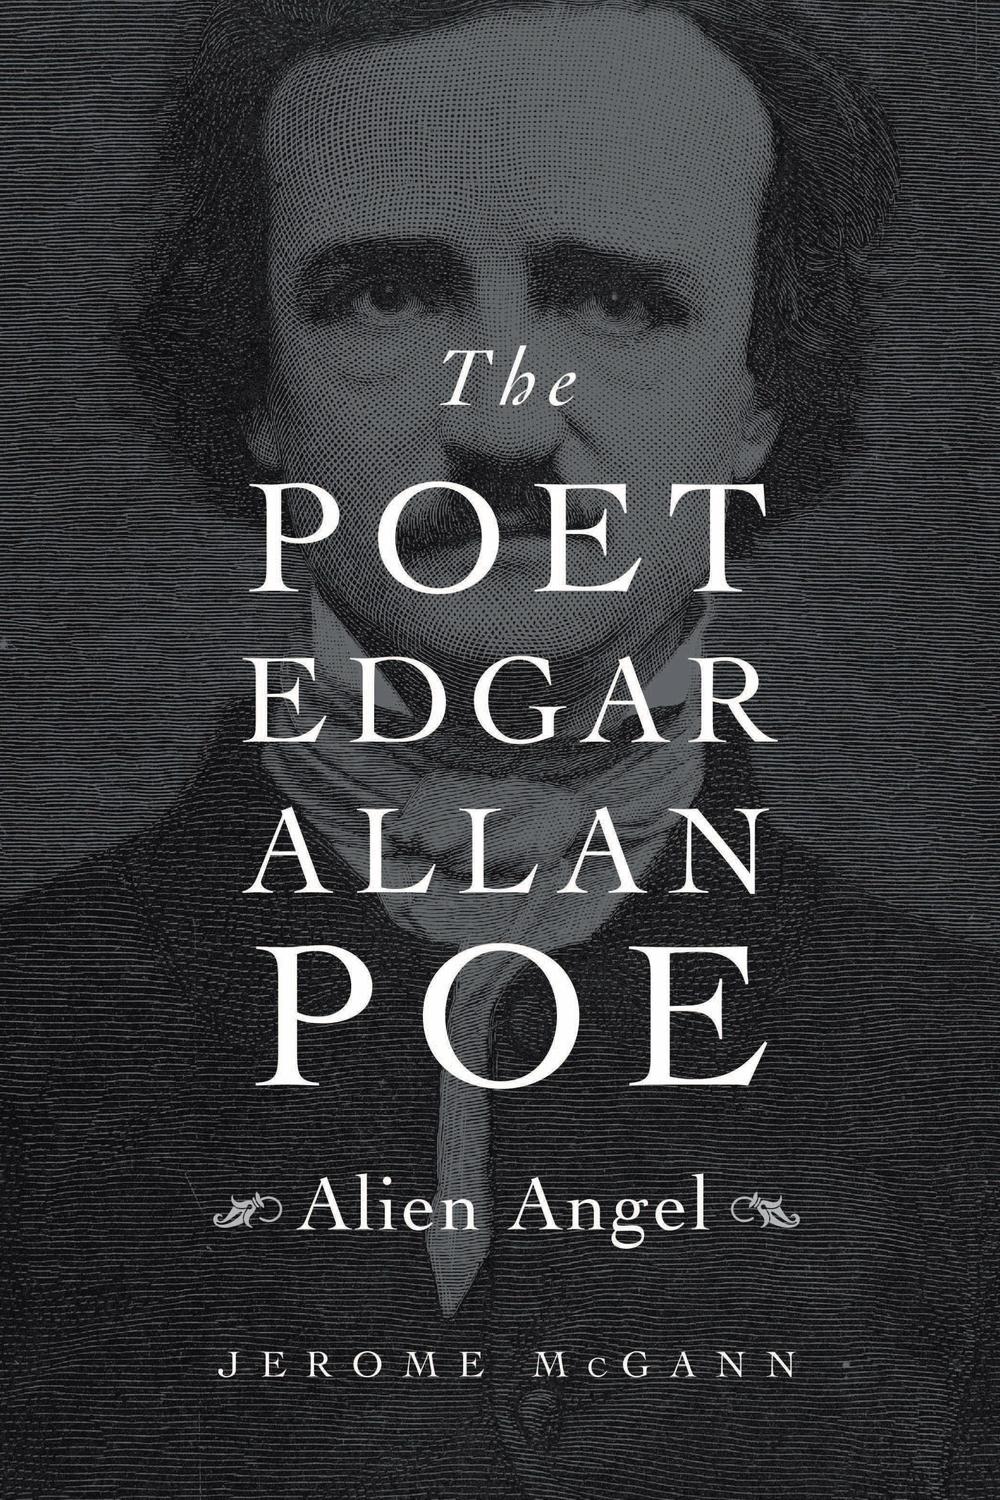 The Poet Edgar Allan Poe - Jerome McGann